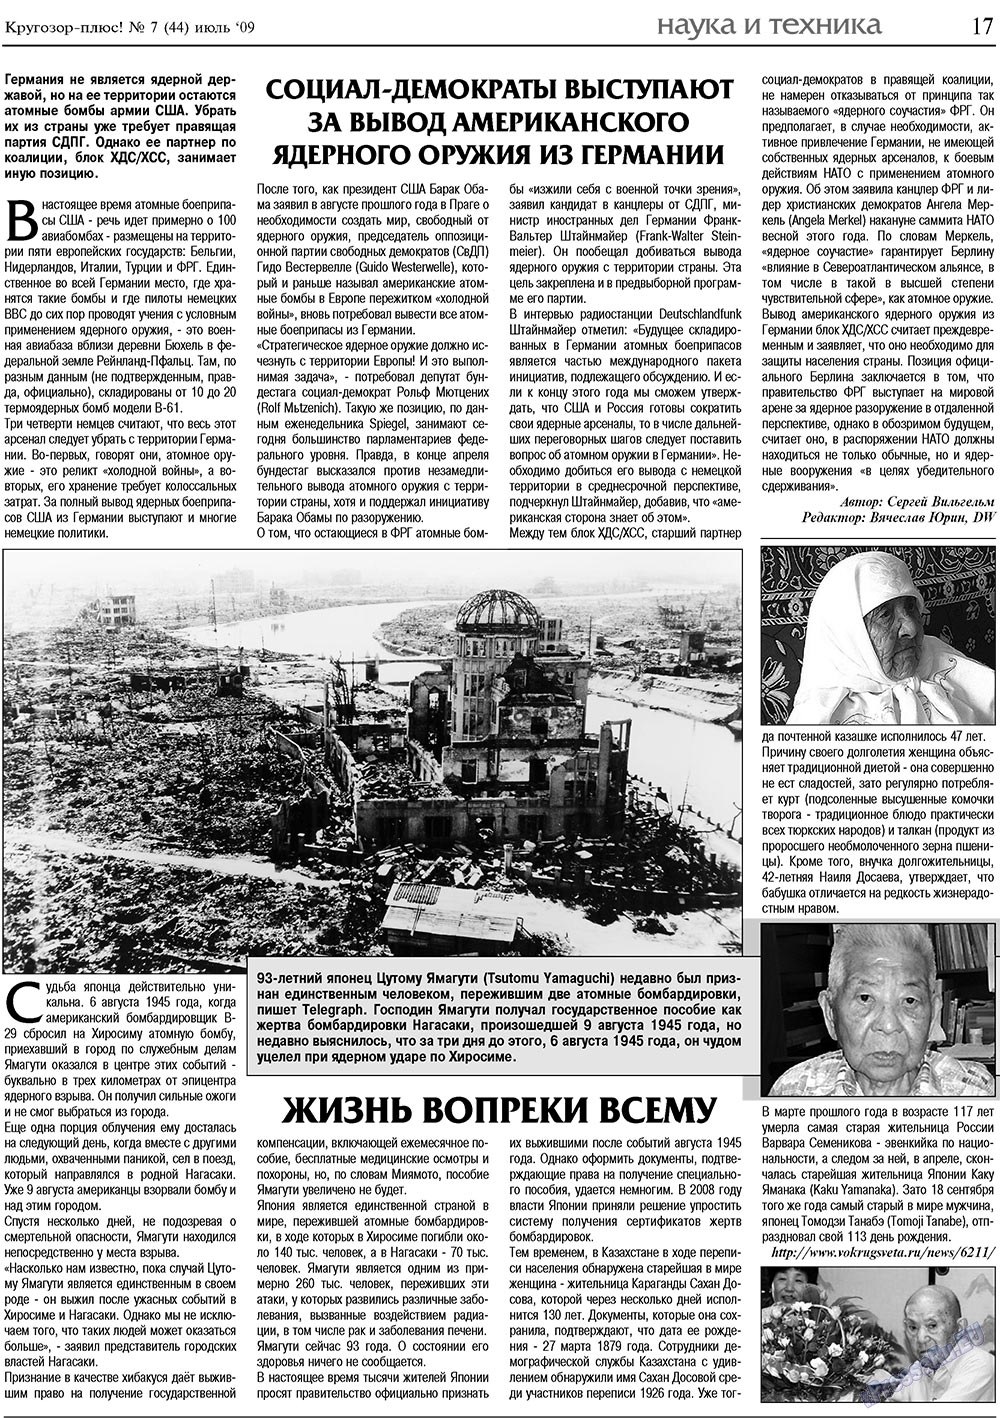 Кругозор плюс!, газета. 2009 №7 стр.17